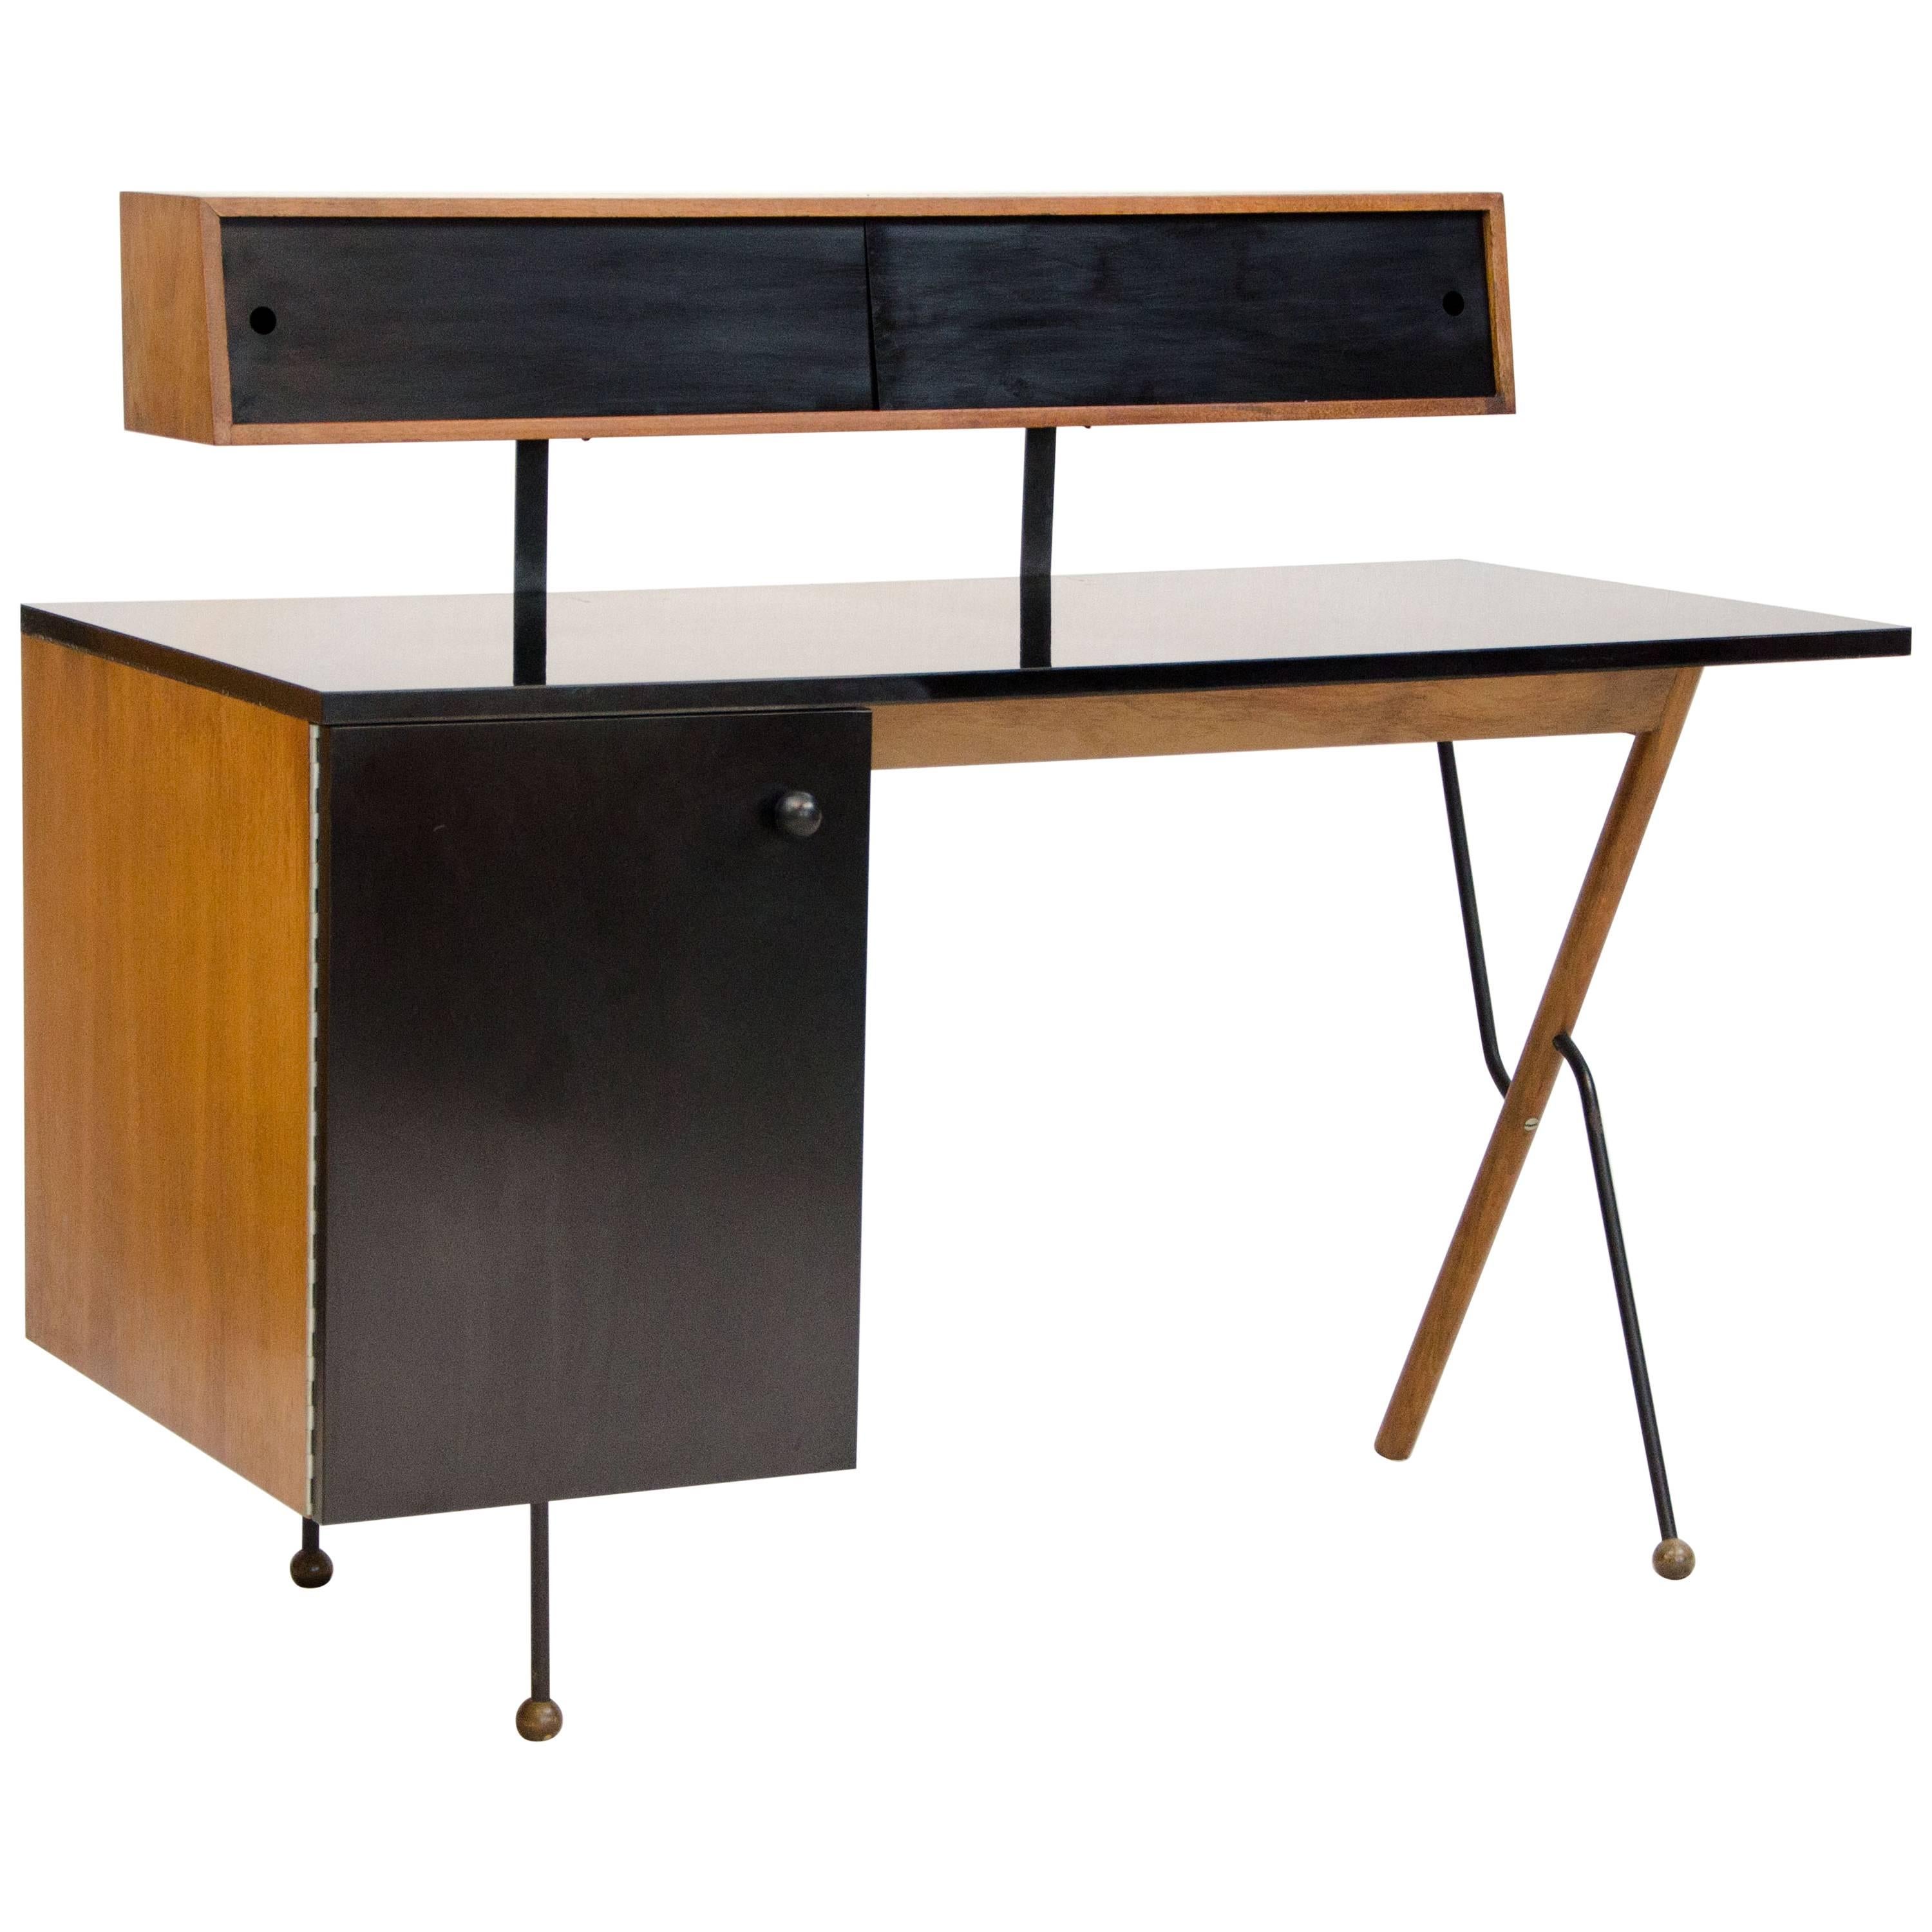 Rare Mid-Century Modern Desk by Greta Grossman for Glenn of California